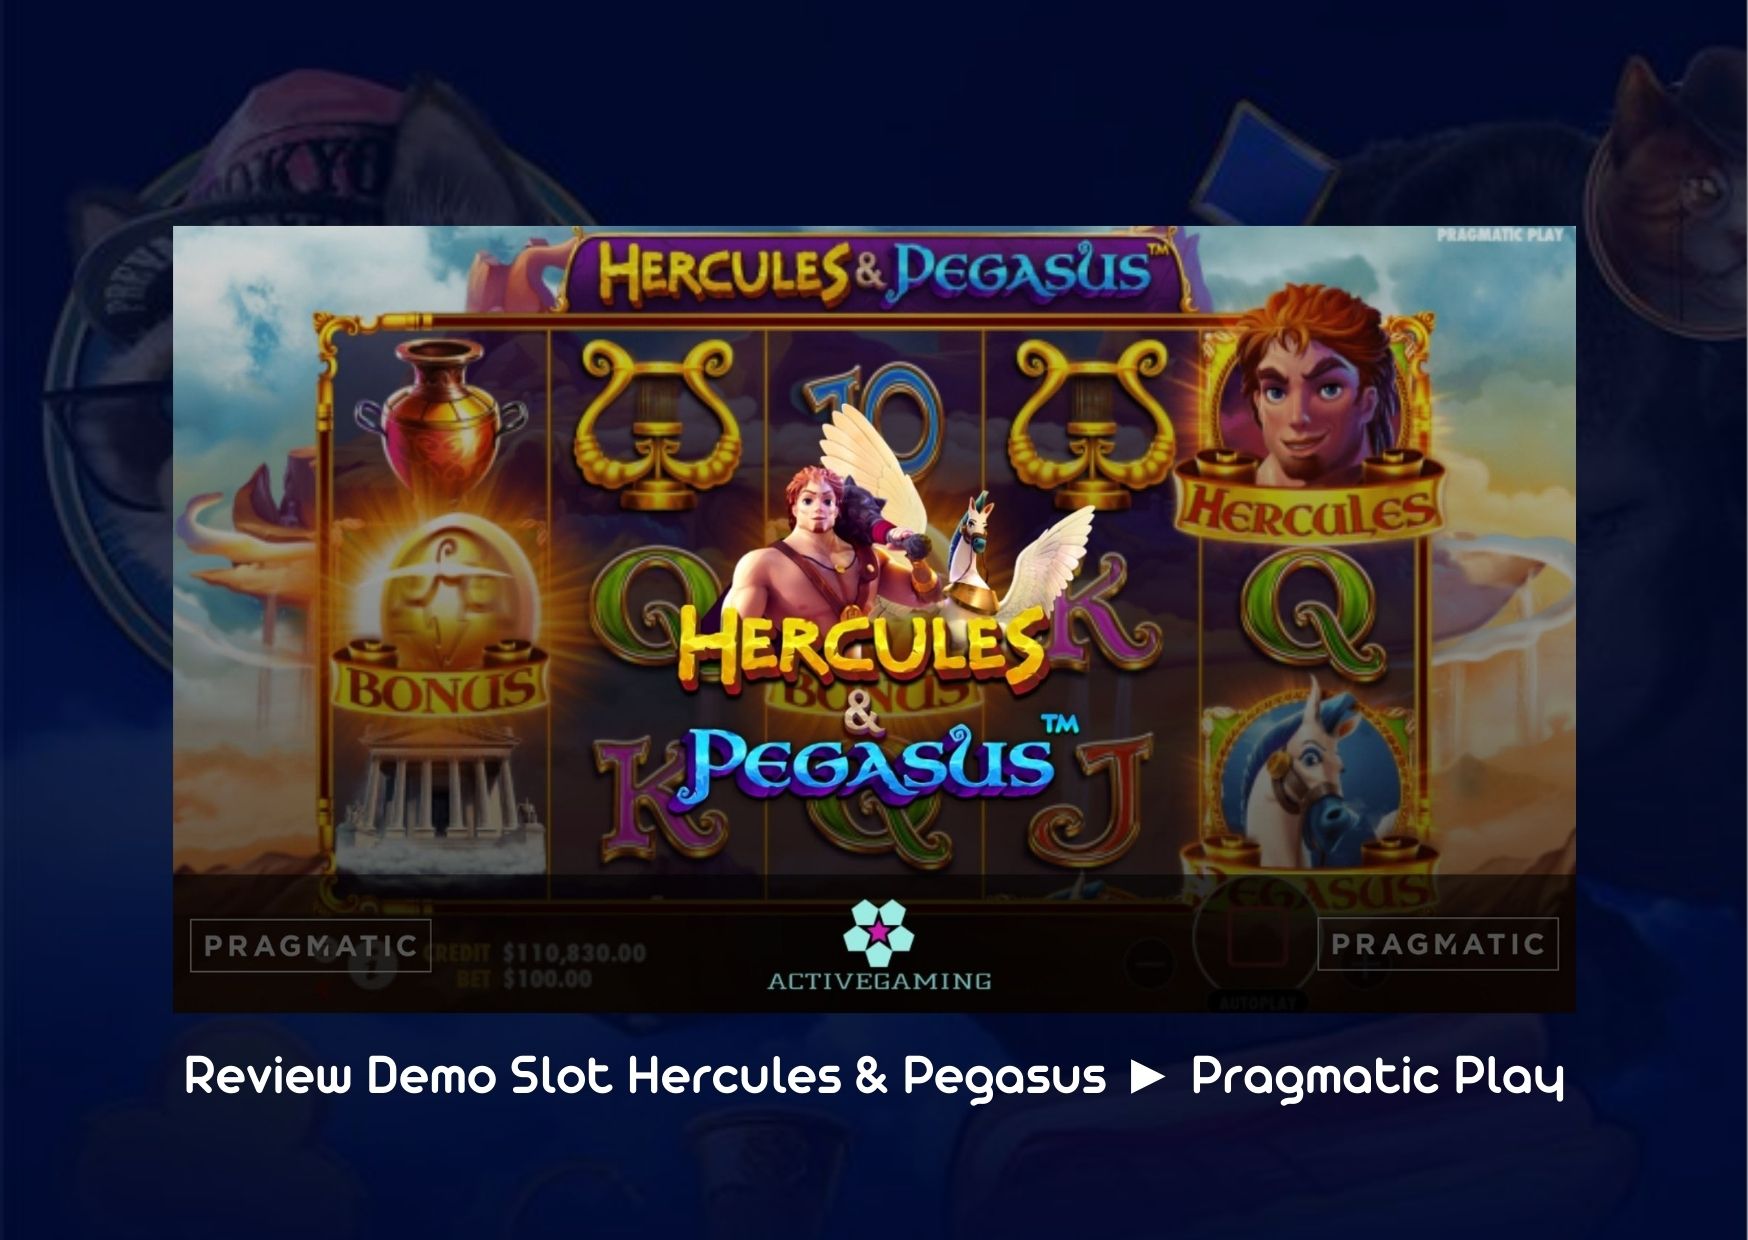 Review Demo Slot Hercules & Pegasus ► Pragmatic Play